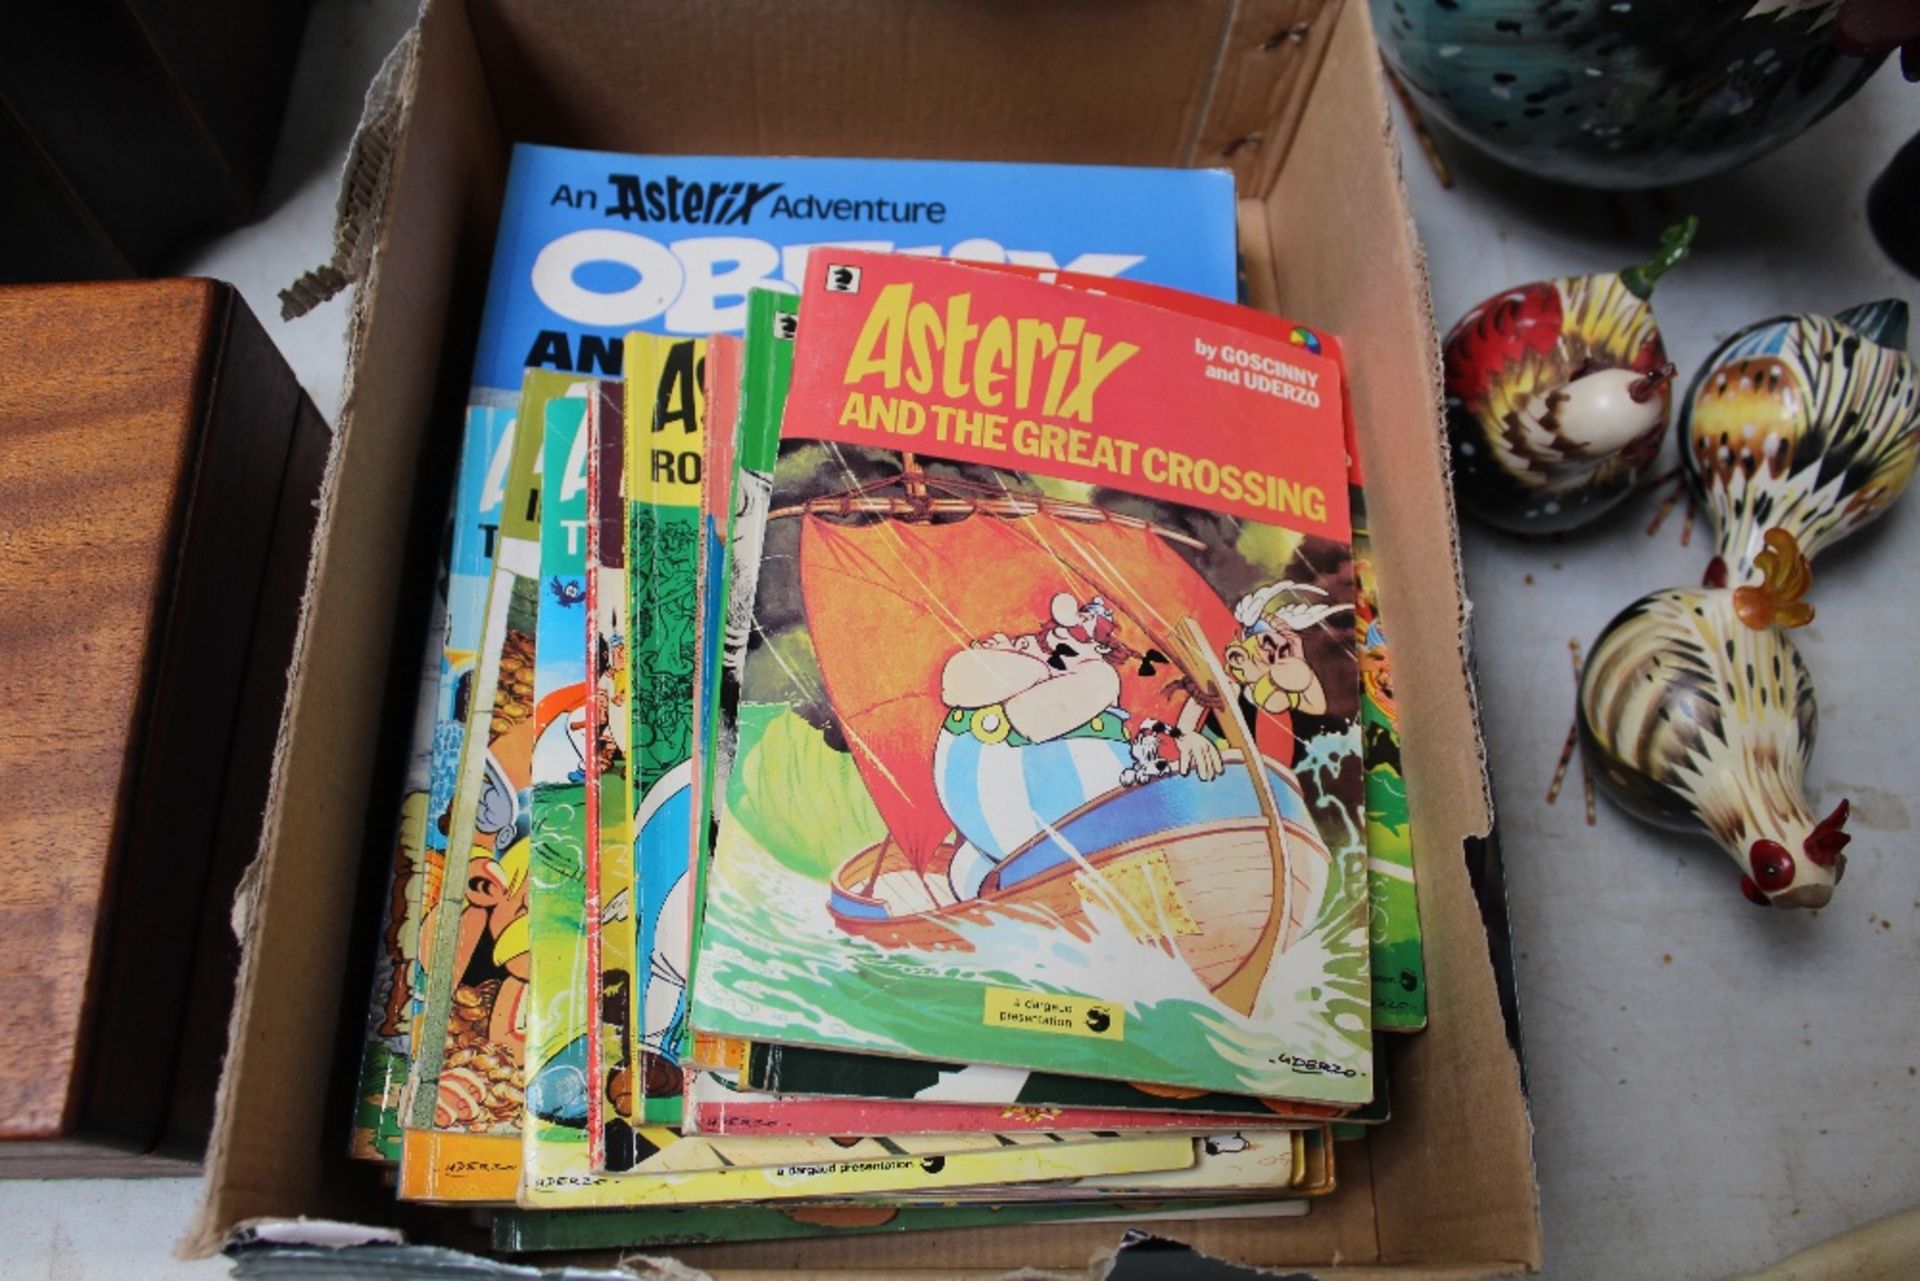 A box of Asterix comic books